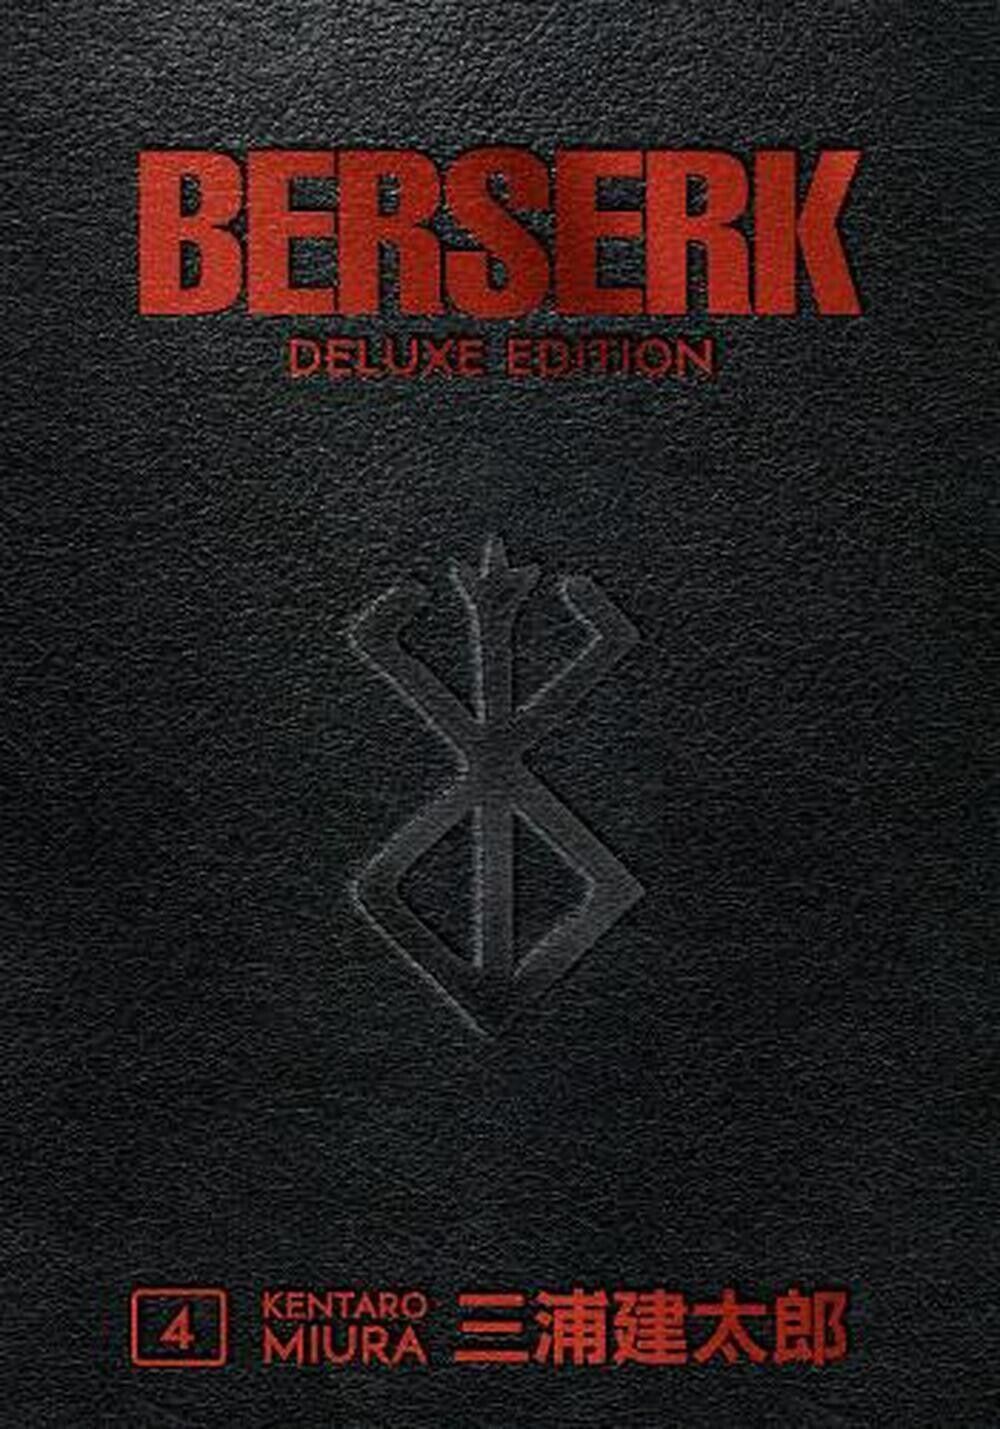 Berserk Deluxe Volume 4 by Kentaro Miura (1506715214) Hardcover